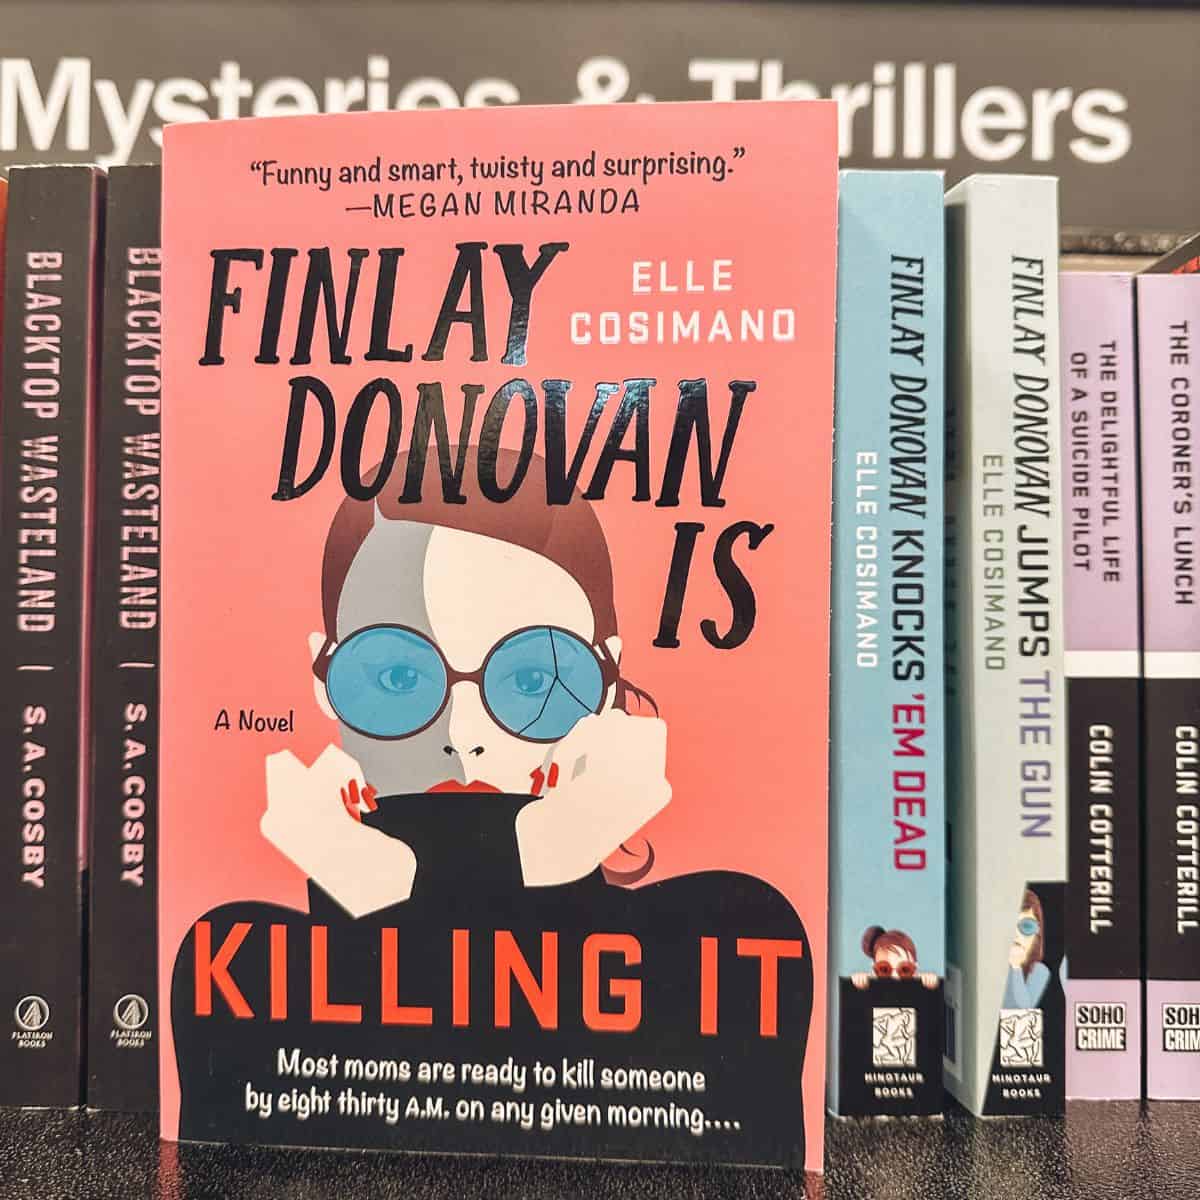 Finley Donovan is killing it books by Elle cosimano on a bookshelf.